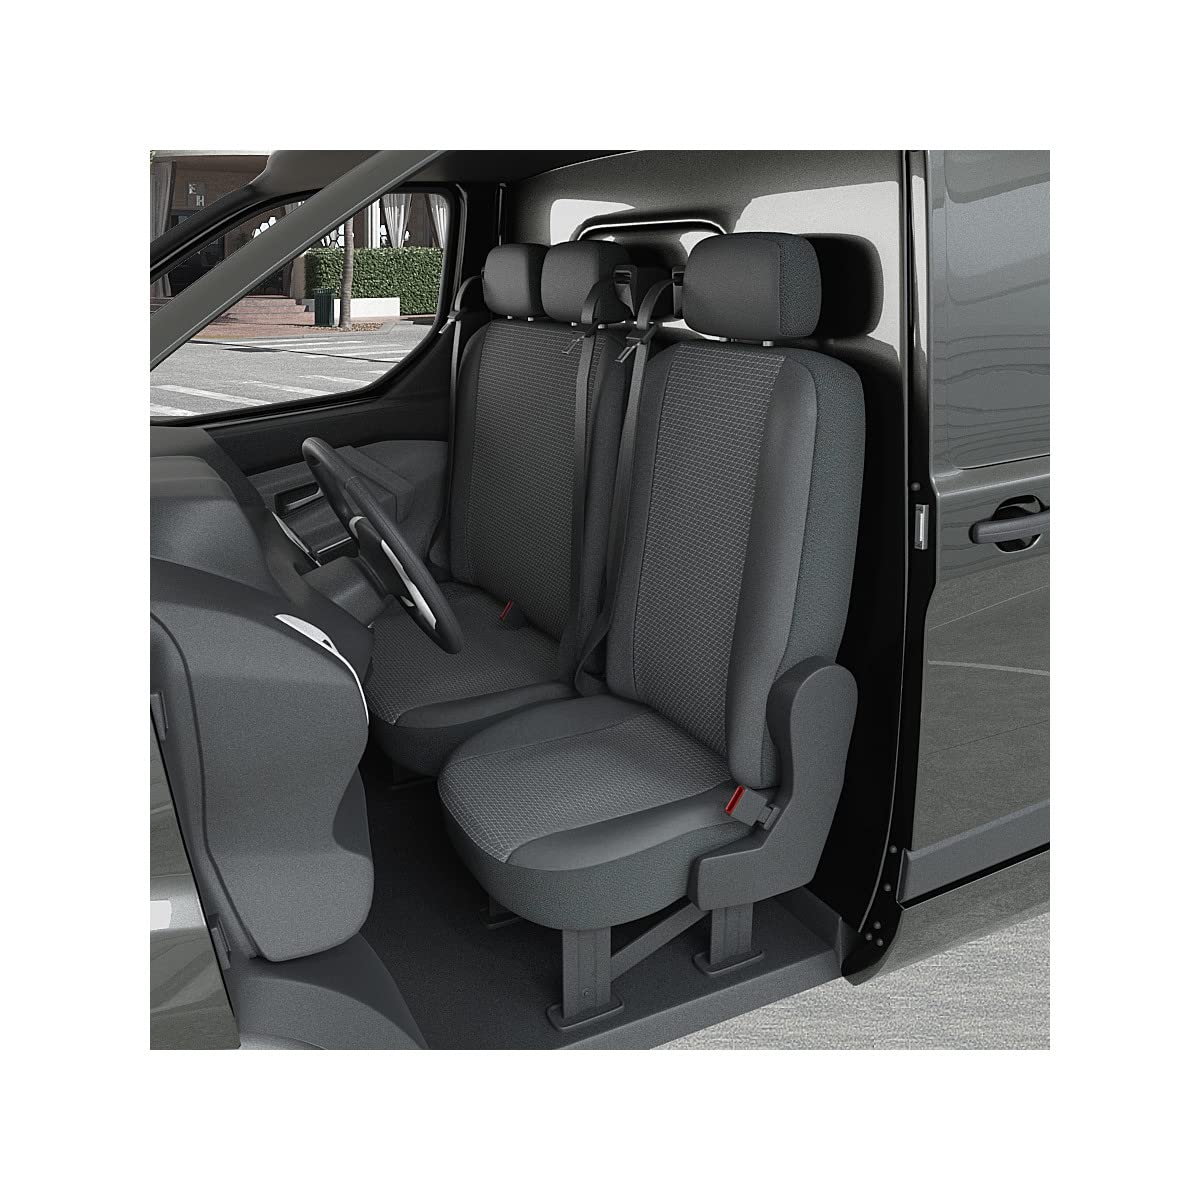 DBS 1013193 Sitzbezug für Auto/Nutzfahrzeuge, Kunstleder, schnelle Montage, kompatibel mit Airbag-Isofix-1013193 von DBS